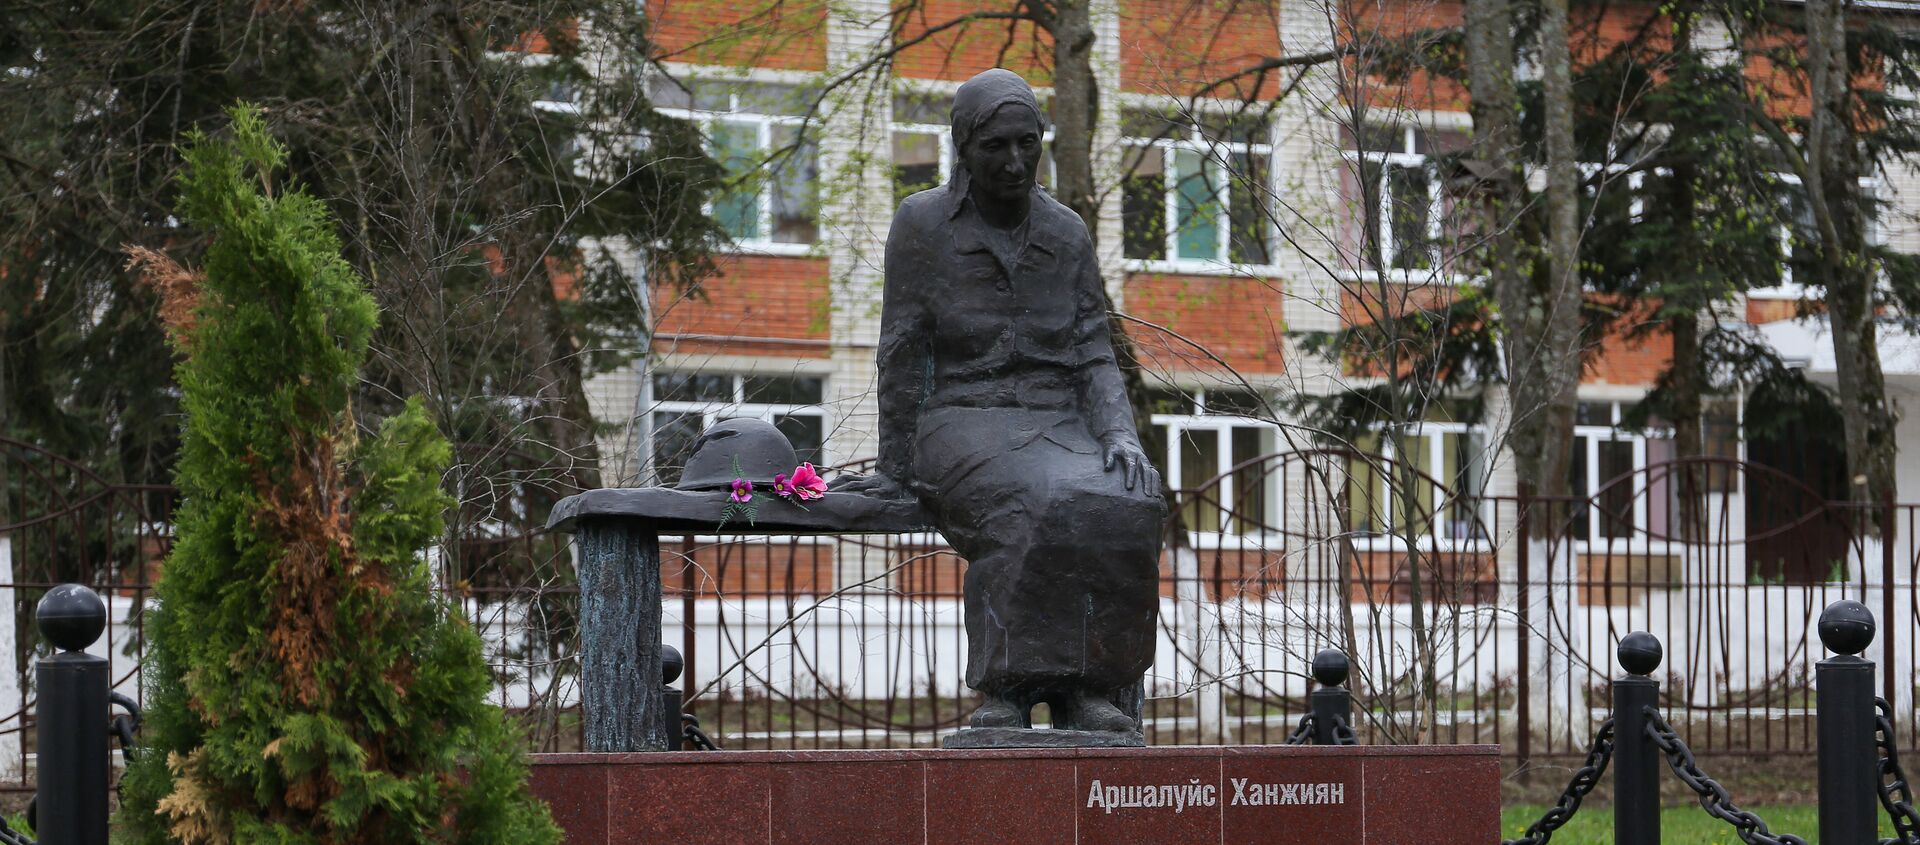 Памятник Аршалуйс Ханжиян в Горячем Ключе - Sputnik Արմենիա, 1920, 07.04.2021